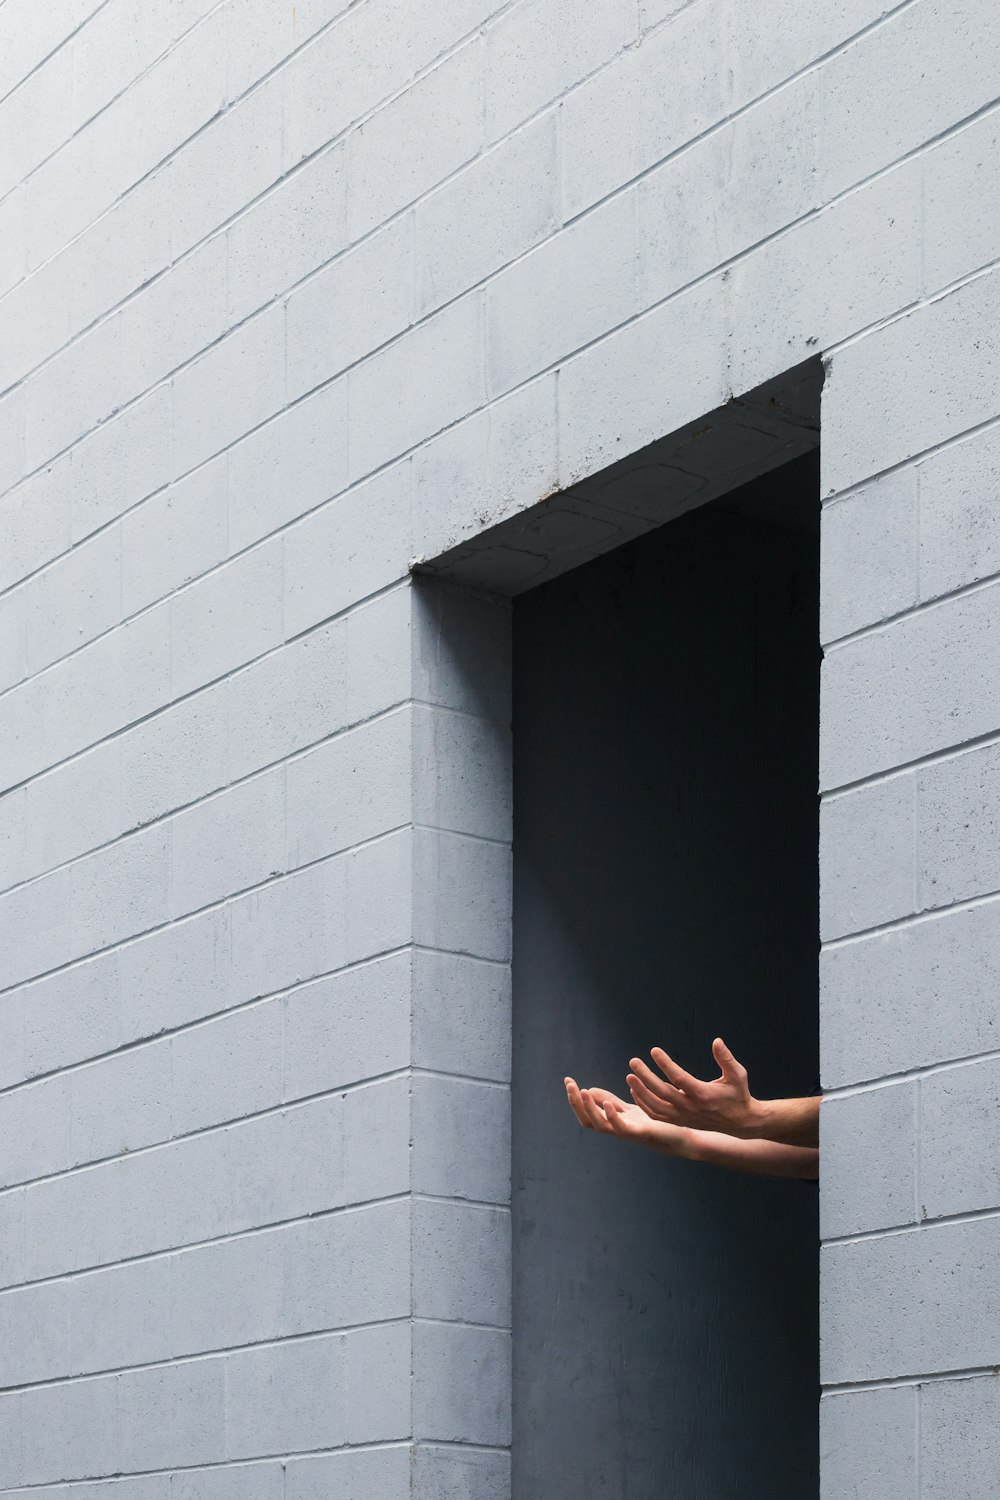 Persona in piedi sul muro di cemento grigio